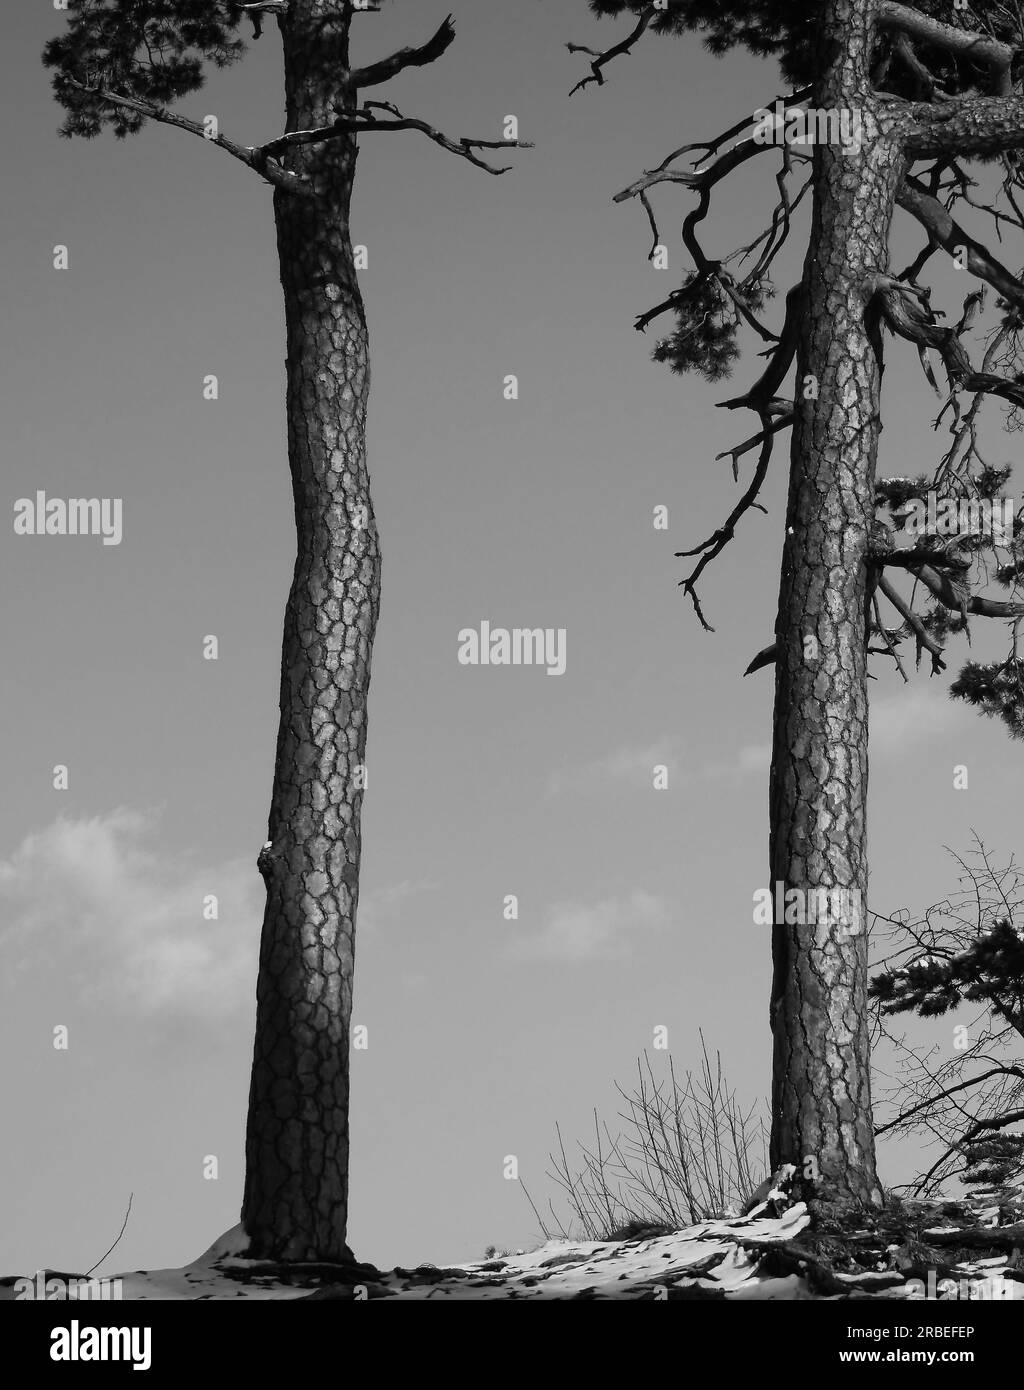 Zwei Bäume an einem sonnigen Wintertag. Einsame Landschaft. Blauer Himmel im Hintergrund. Schwarzweißbild. Stockfoto